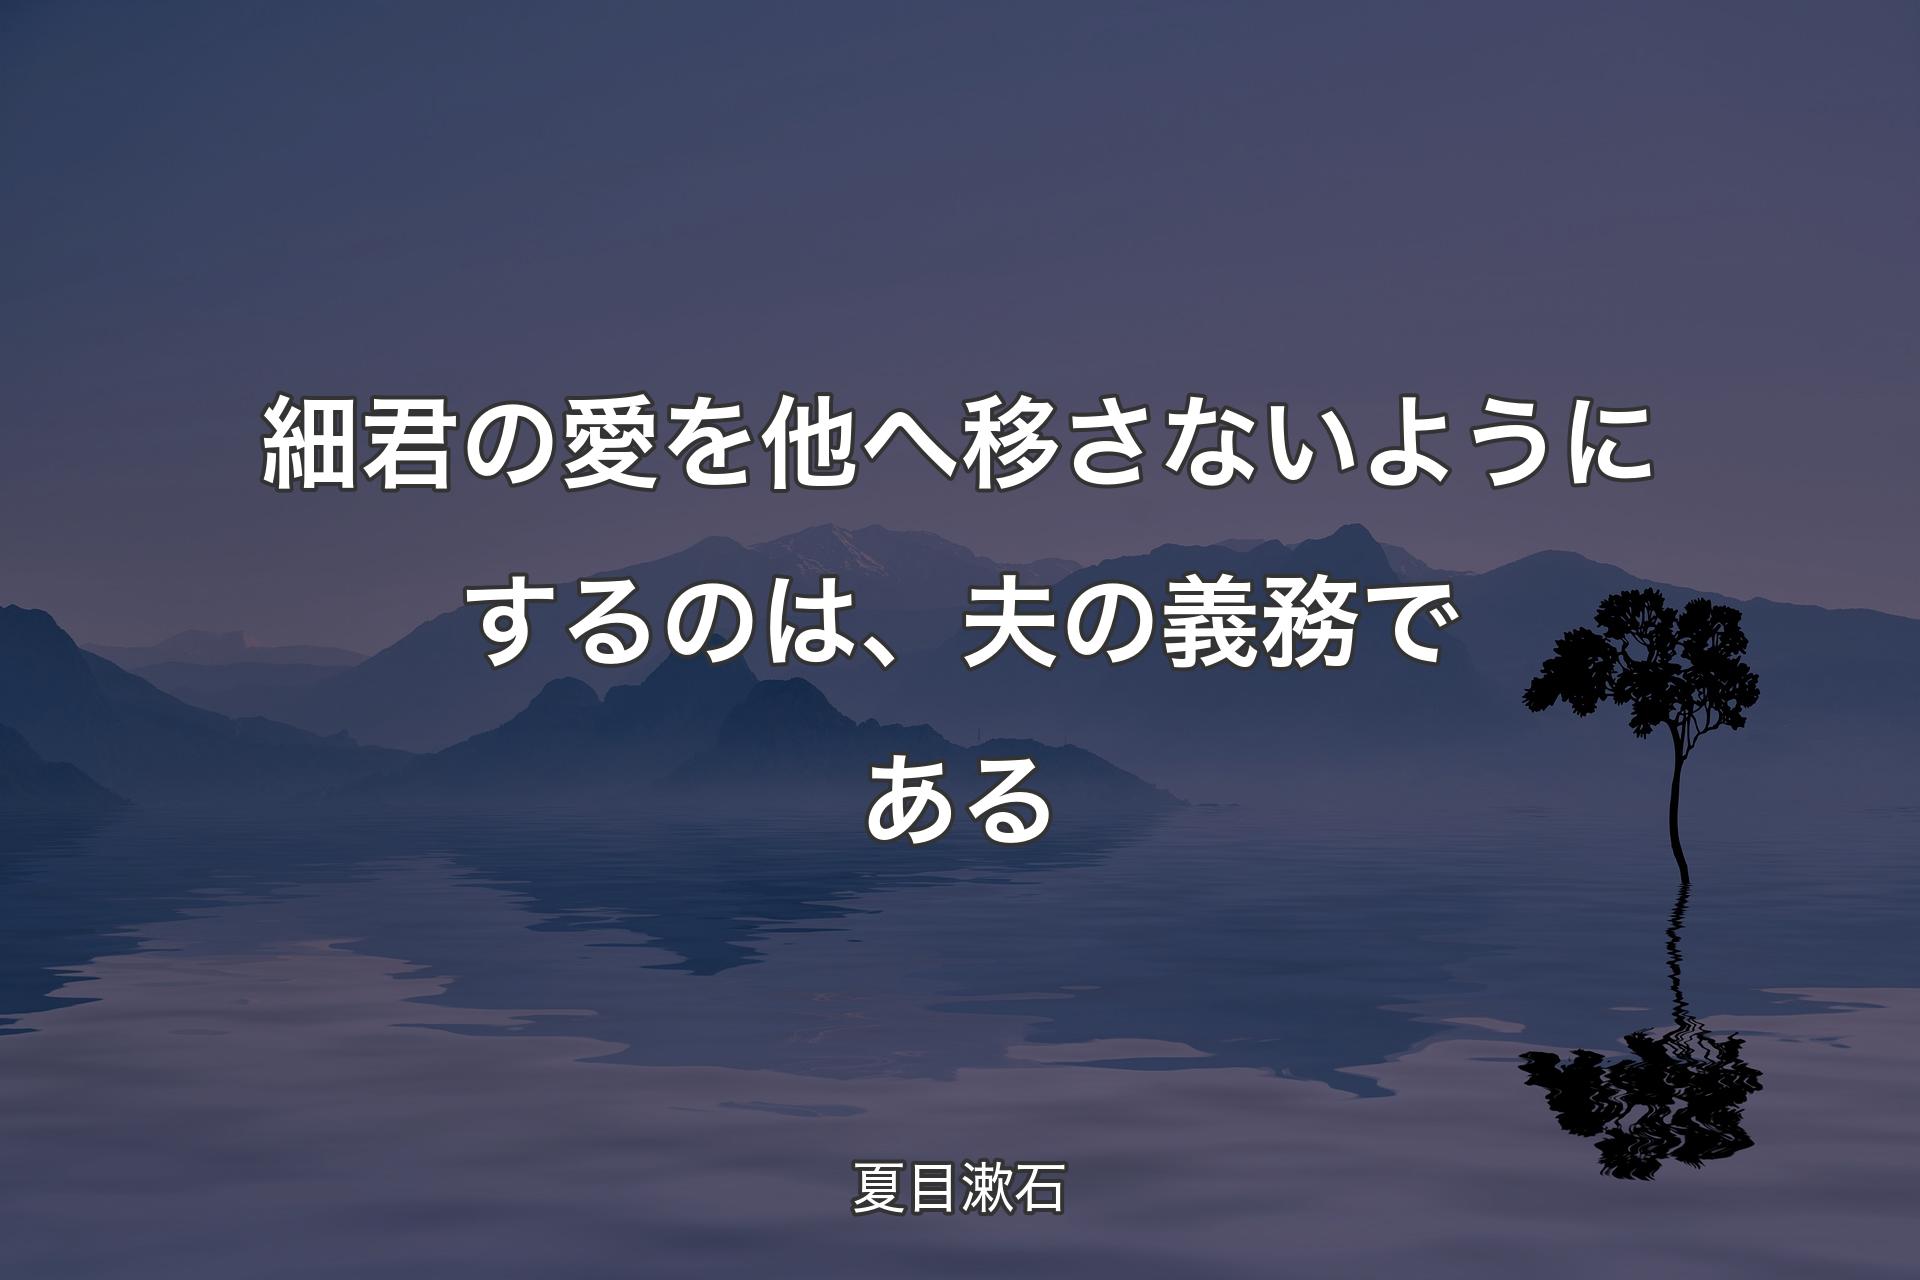 【背景4】細君の愛を他へ移さないようにするのは、夫の義務で�ある - 夏目漱石